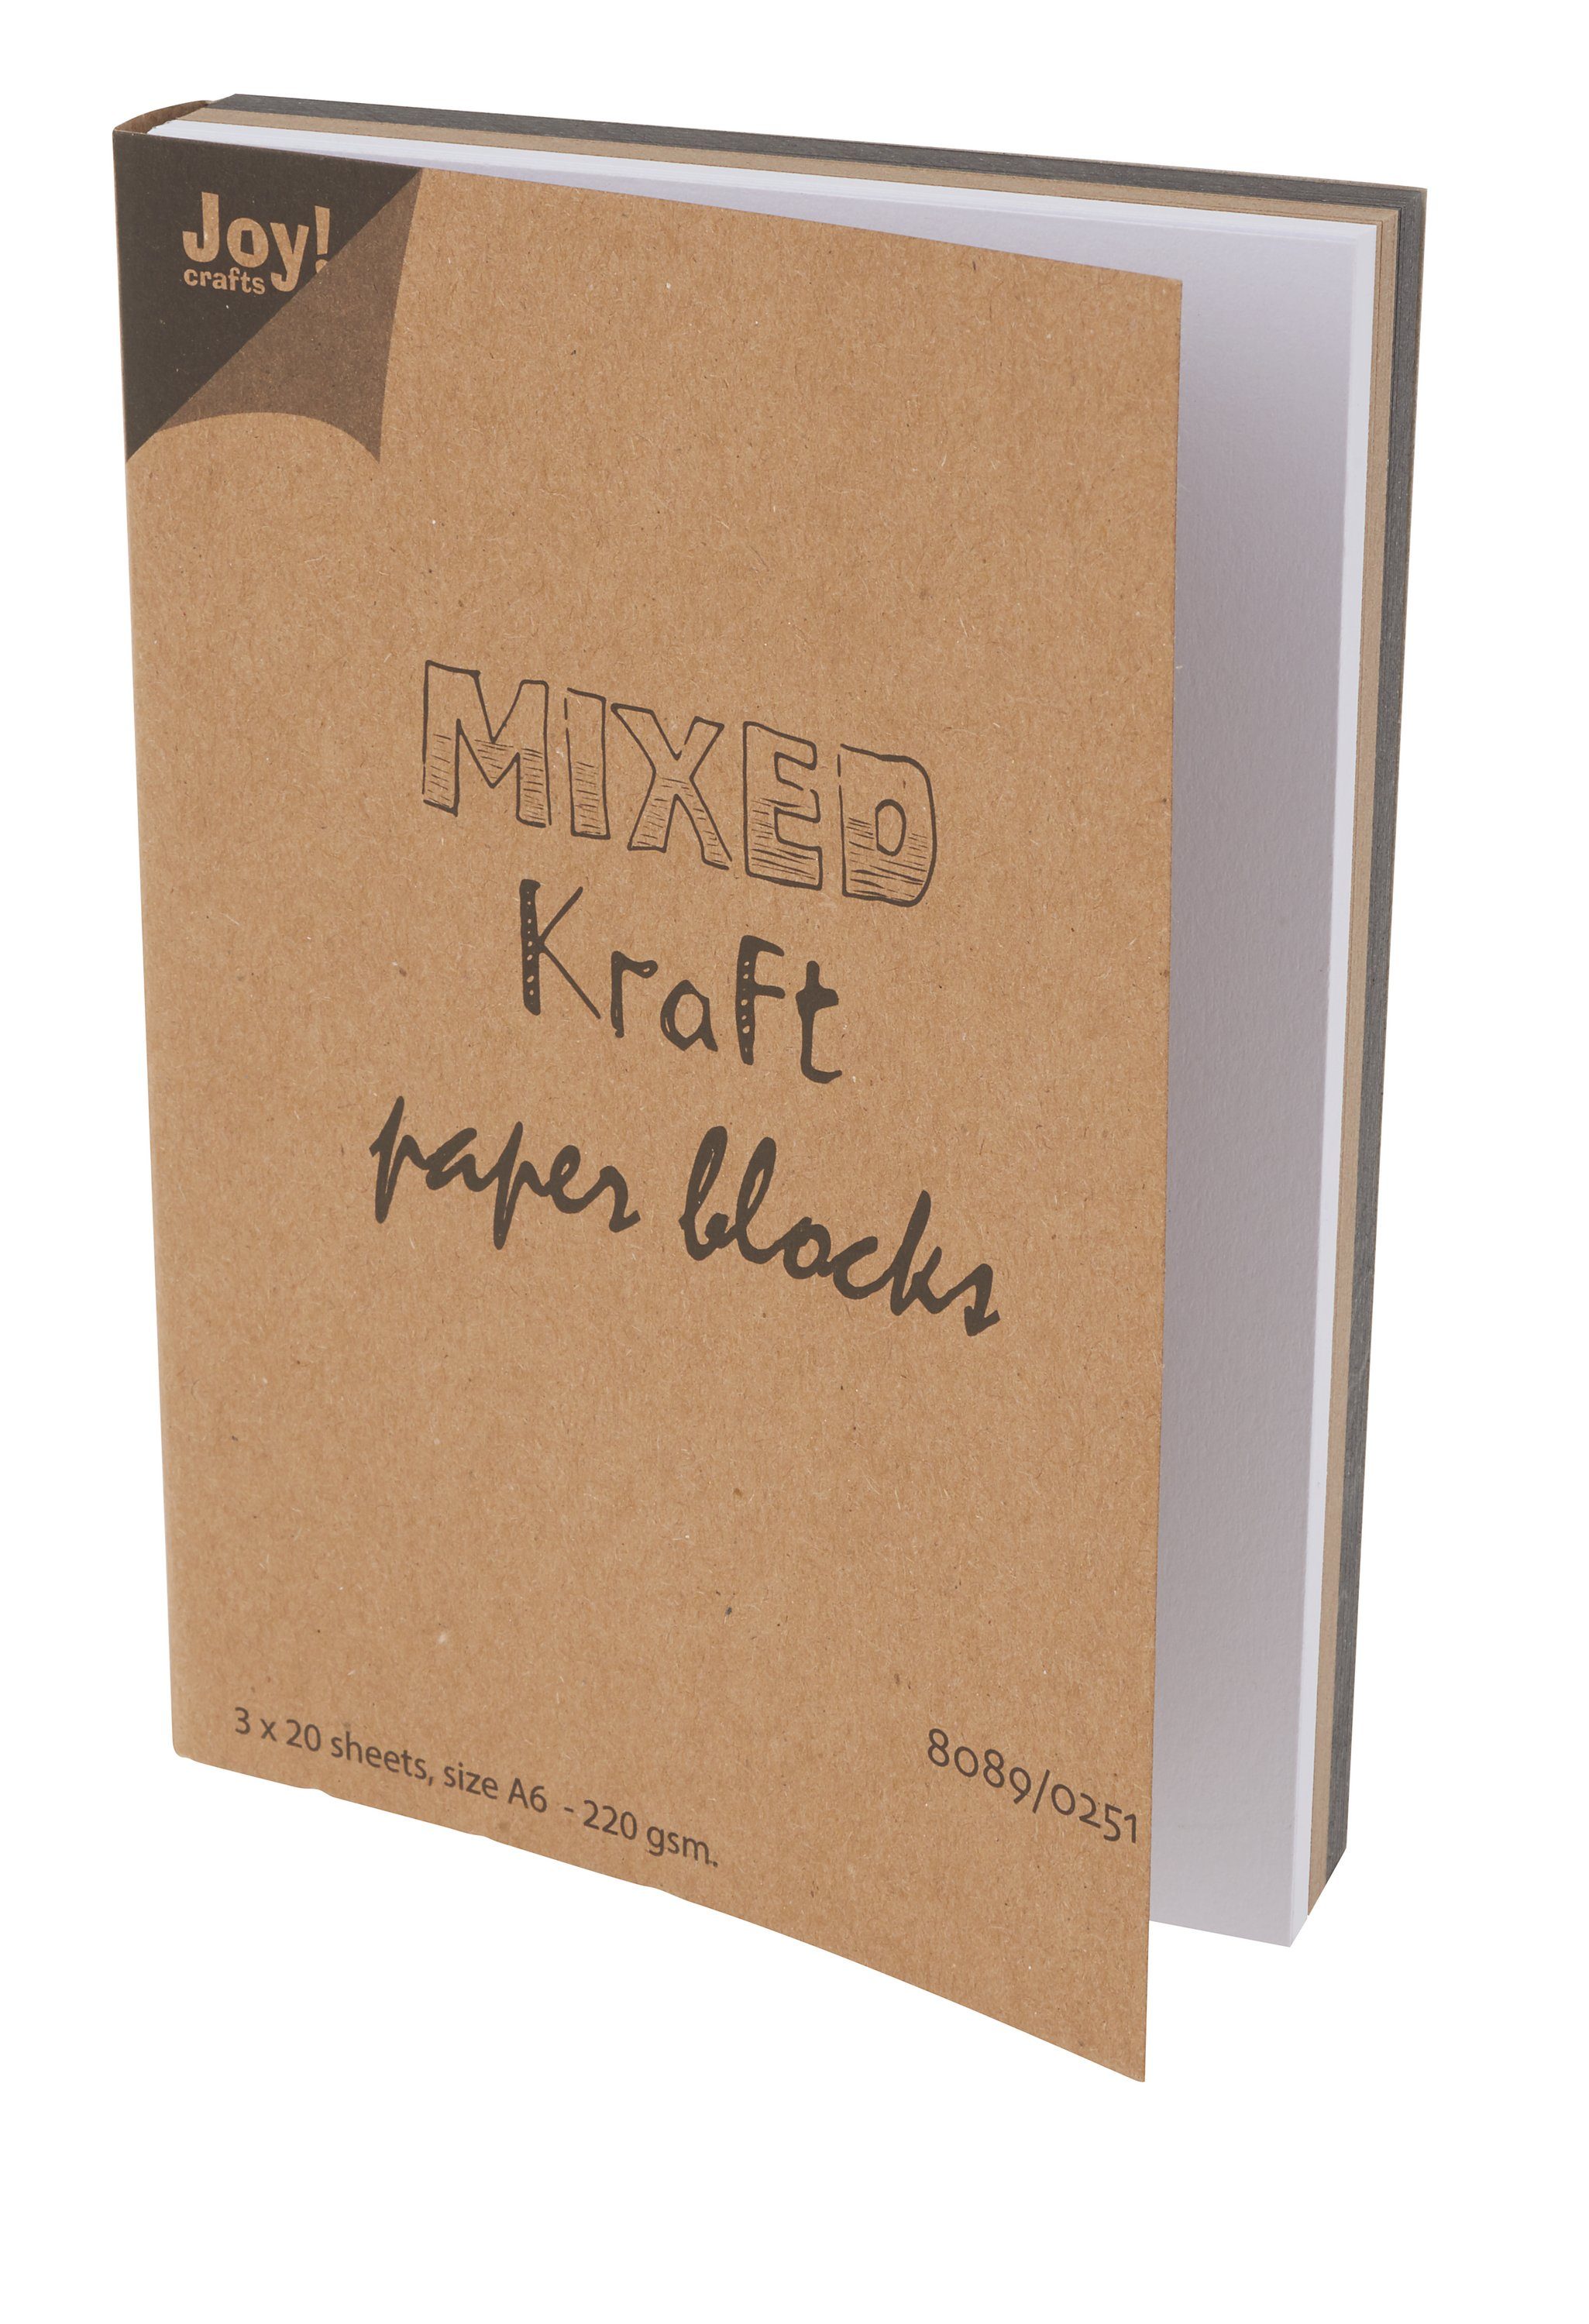 JOY CRAFTS Kraftpapier Mixed, 3 x 20 Blatt